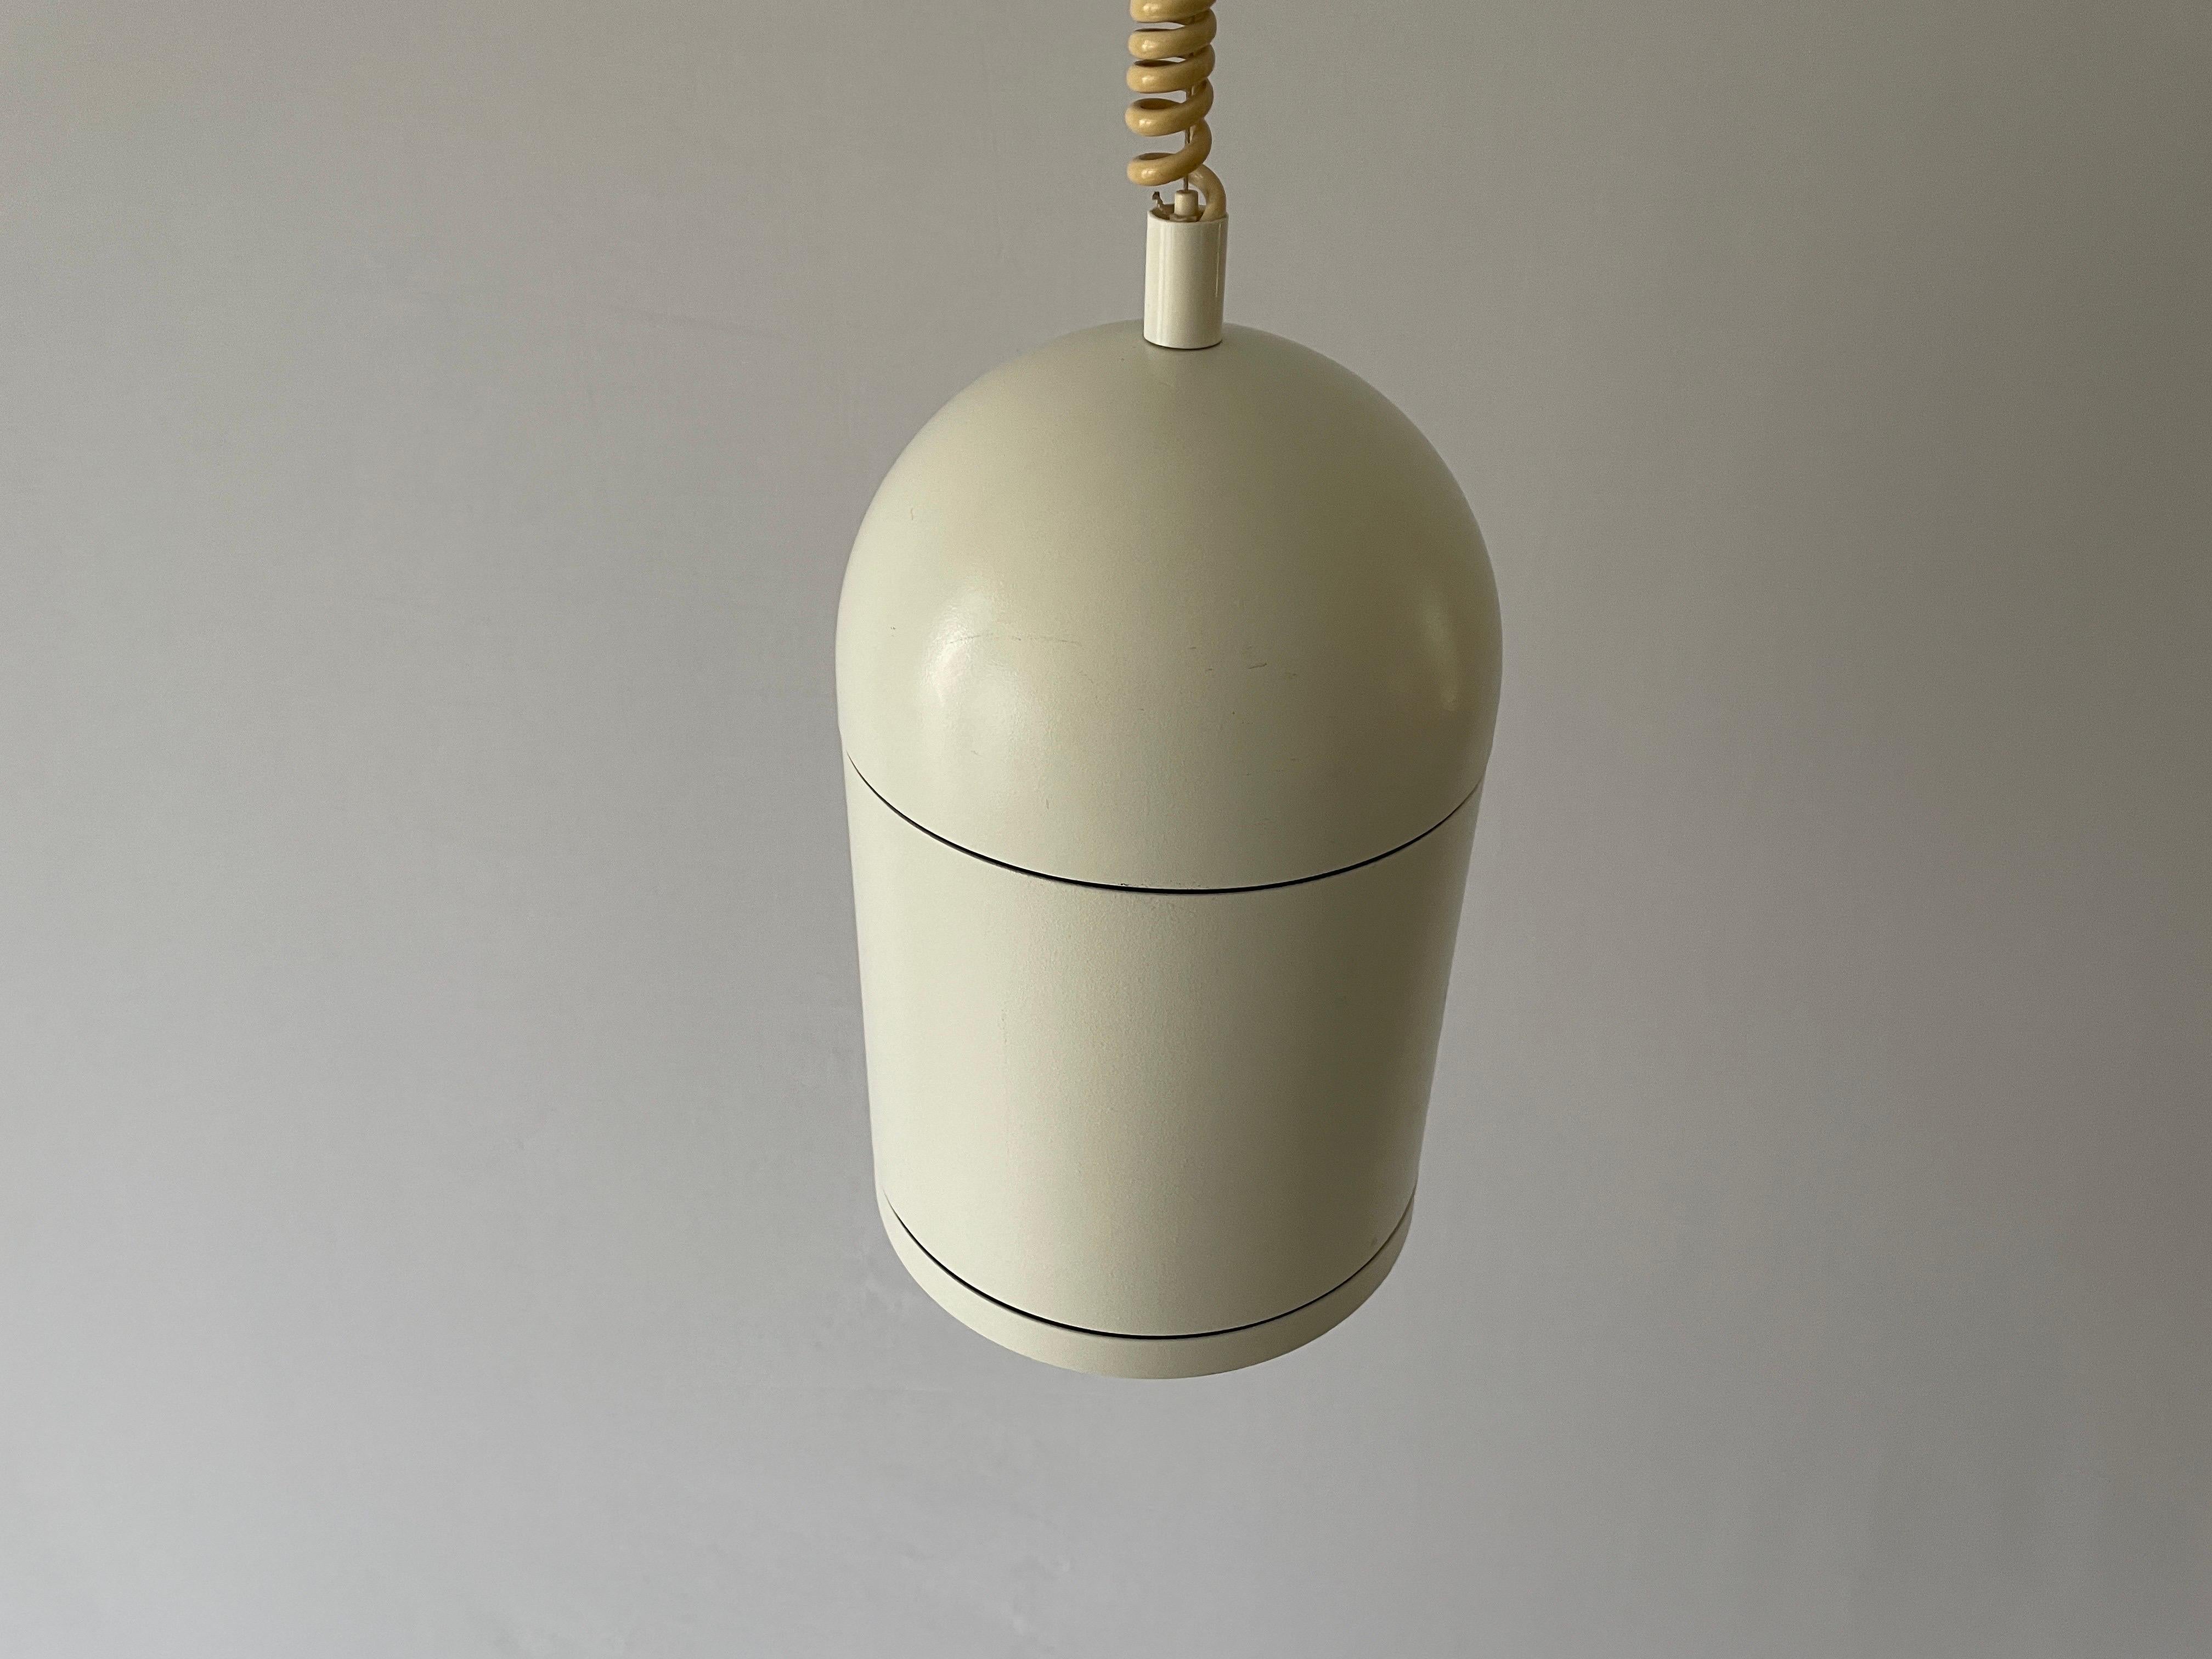 Lampe suspendue réglable en métal blanc par BEGA, années 1960, Allemagne

La lampe est en très bon état.
Usure correspondant à l'âge et à l'usage.

Ces lampes fonctionnent avec des ampoules fluorescentes standard. 
Câblé et utilisable dans tous les